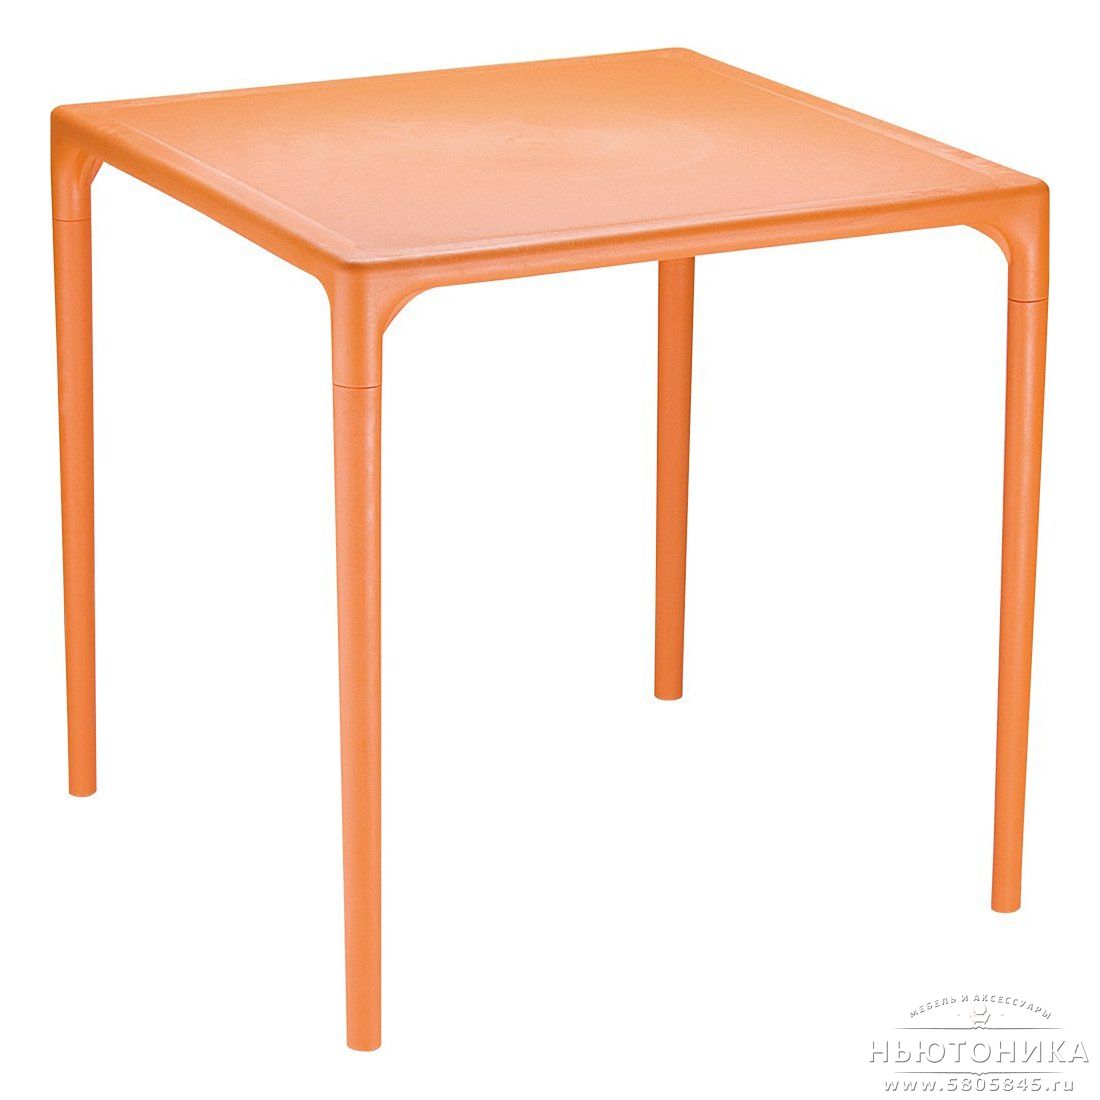 Оранжевый столик. Стол Mango Alu. Стол квадратный (800*800*740) белый м2593. Пластмассовый стол. Столик пластиковый.